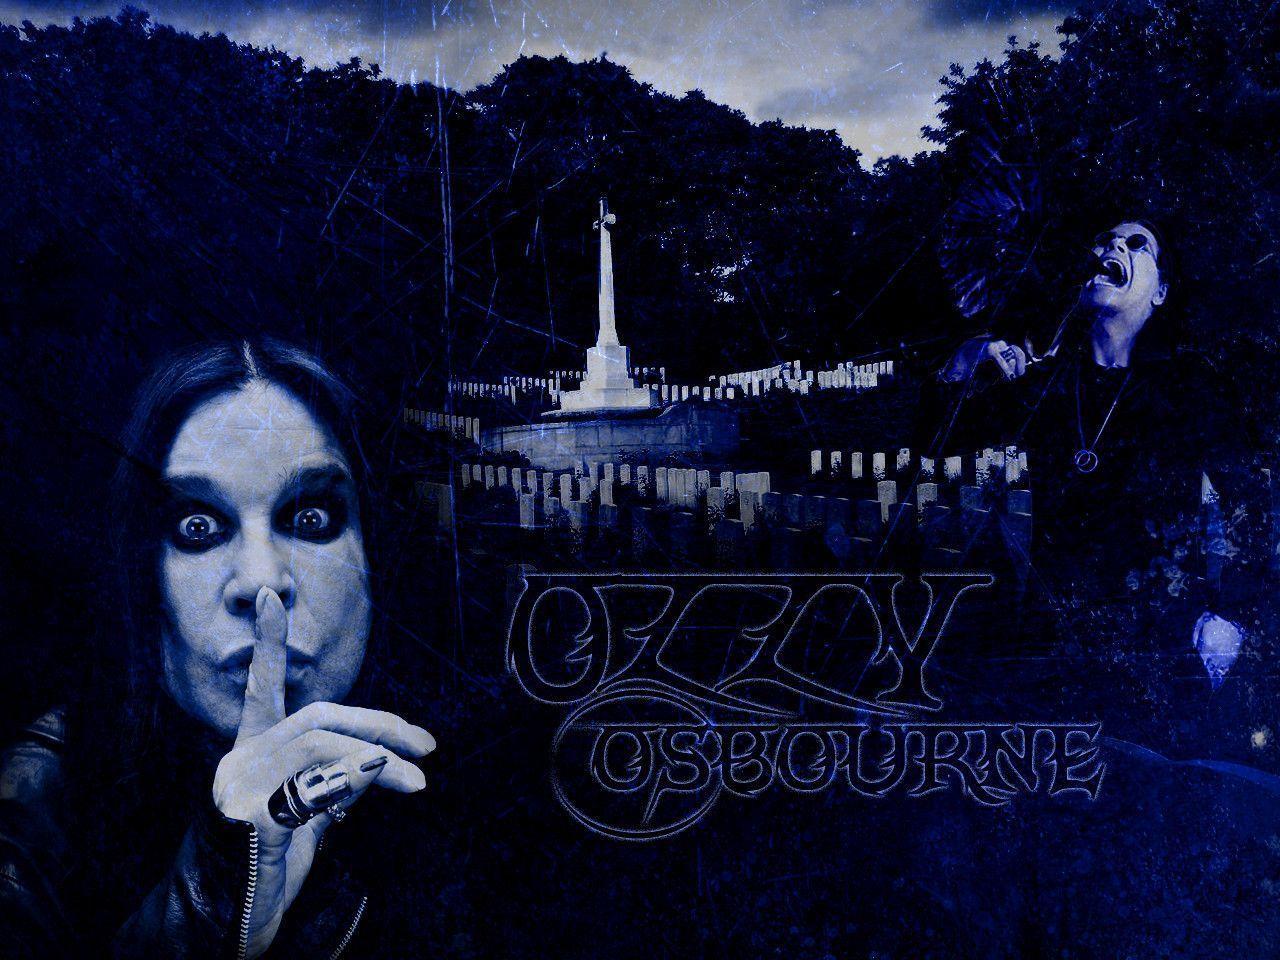 Ozzy Osbourne- Wallpaper